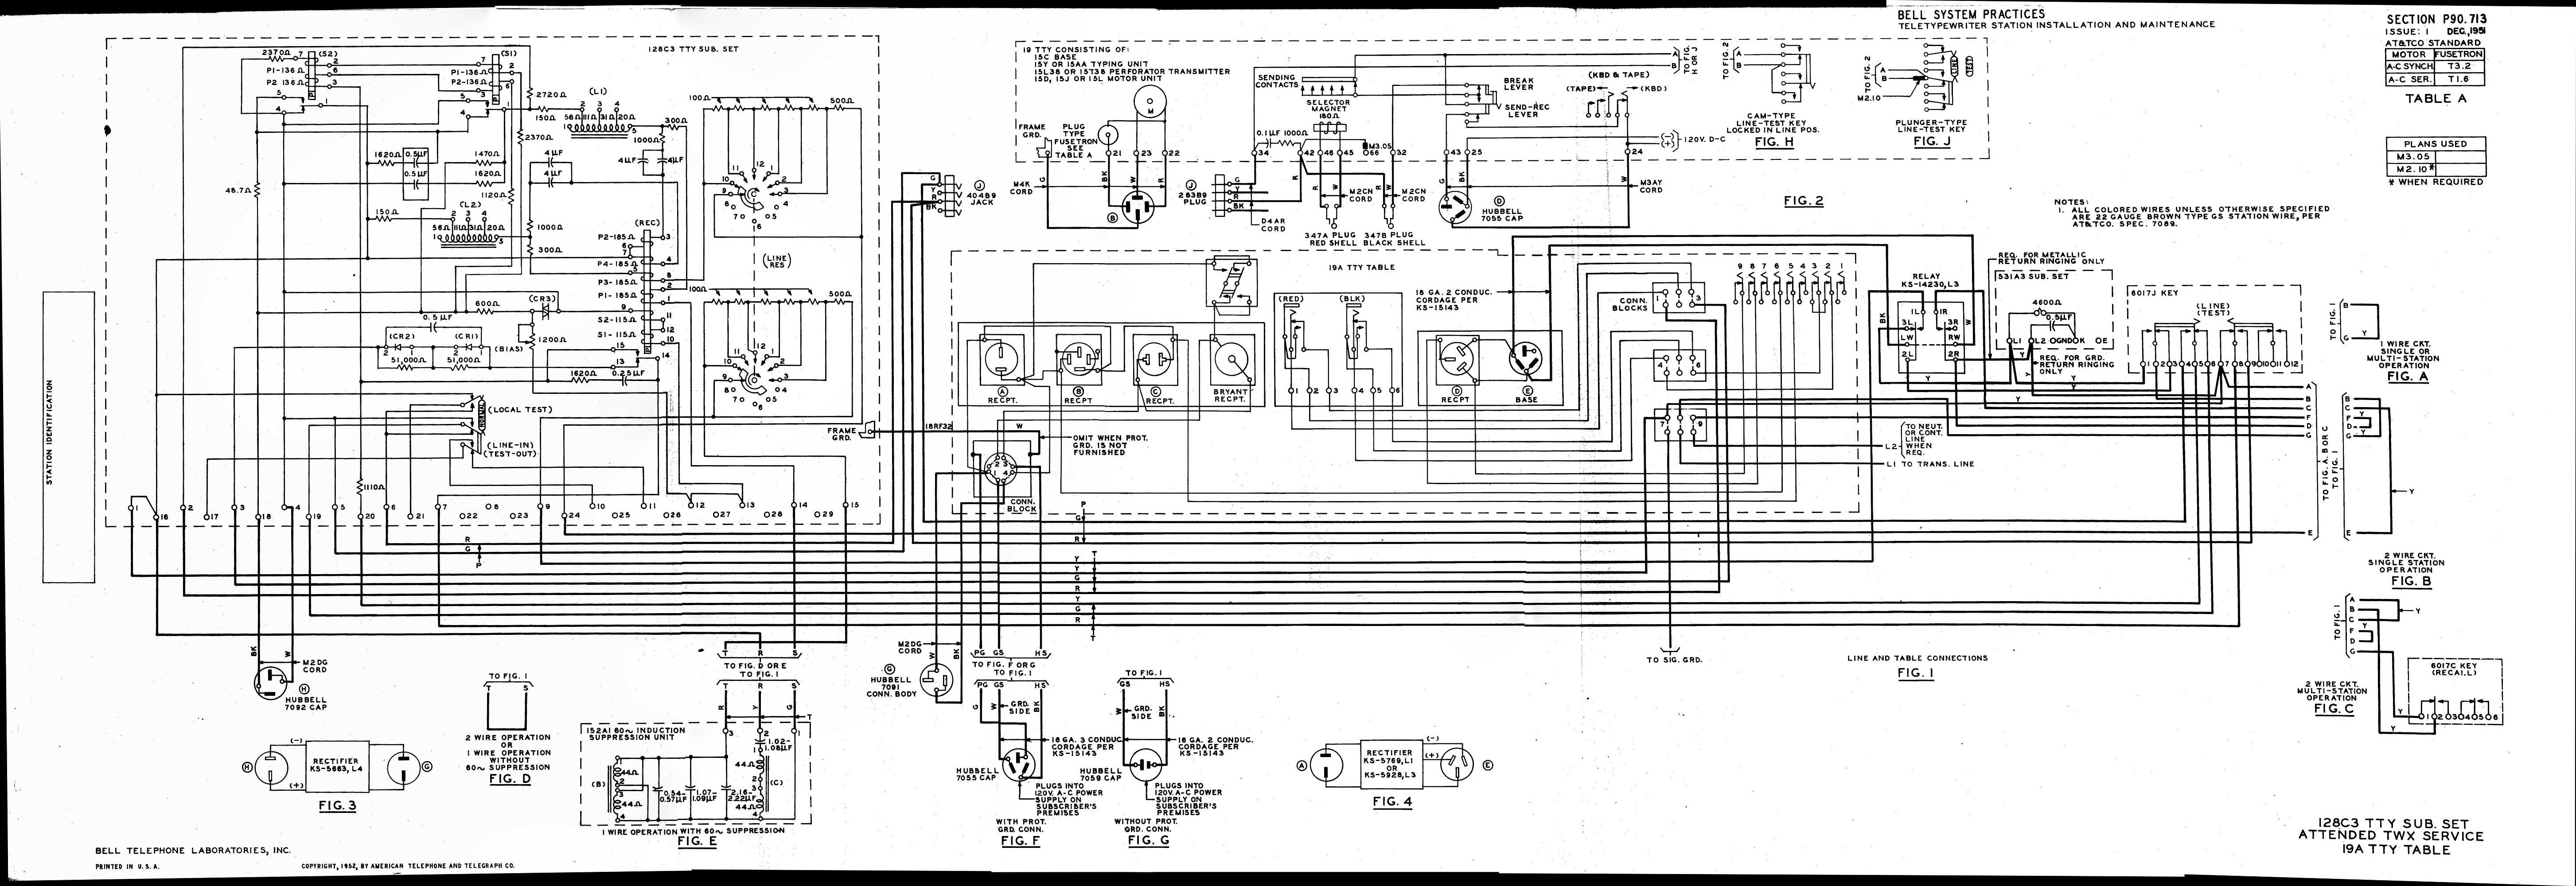 Wiring Diagram PDF: 2003 American Iron Horse Wiring Diagram